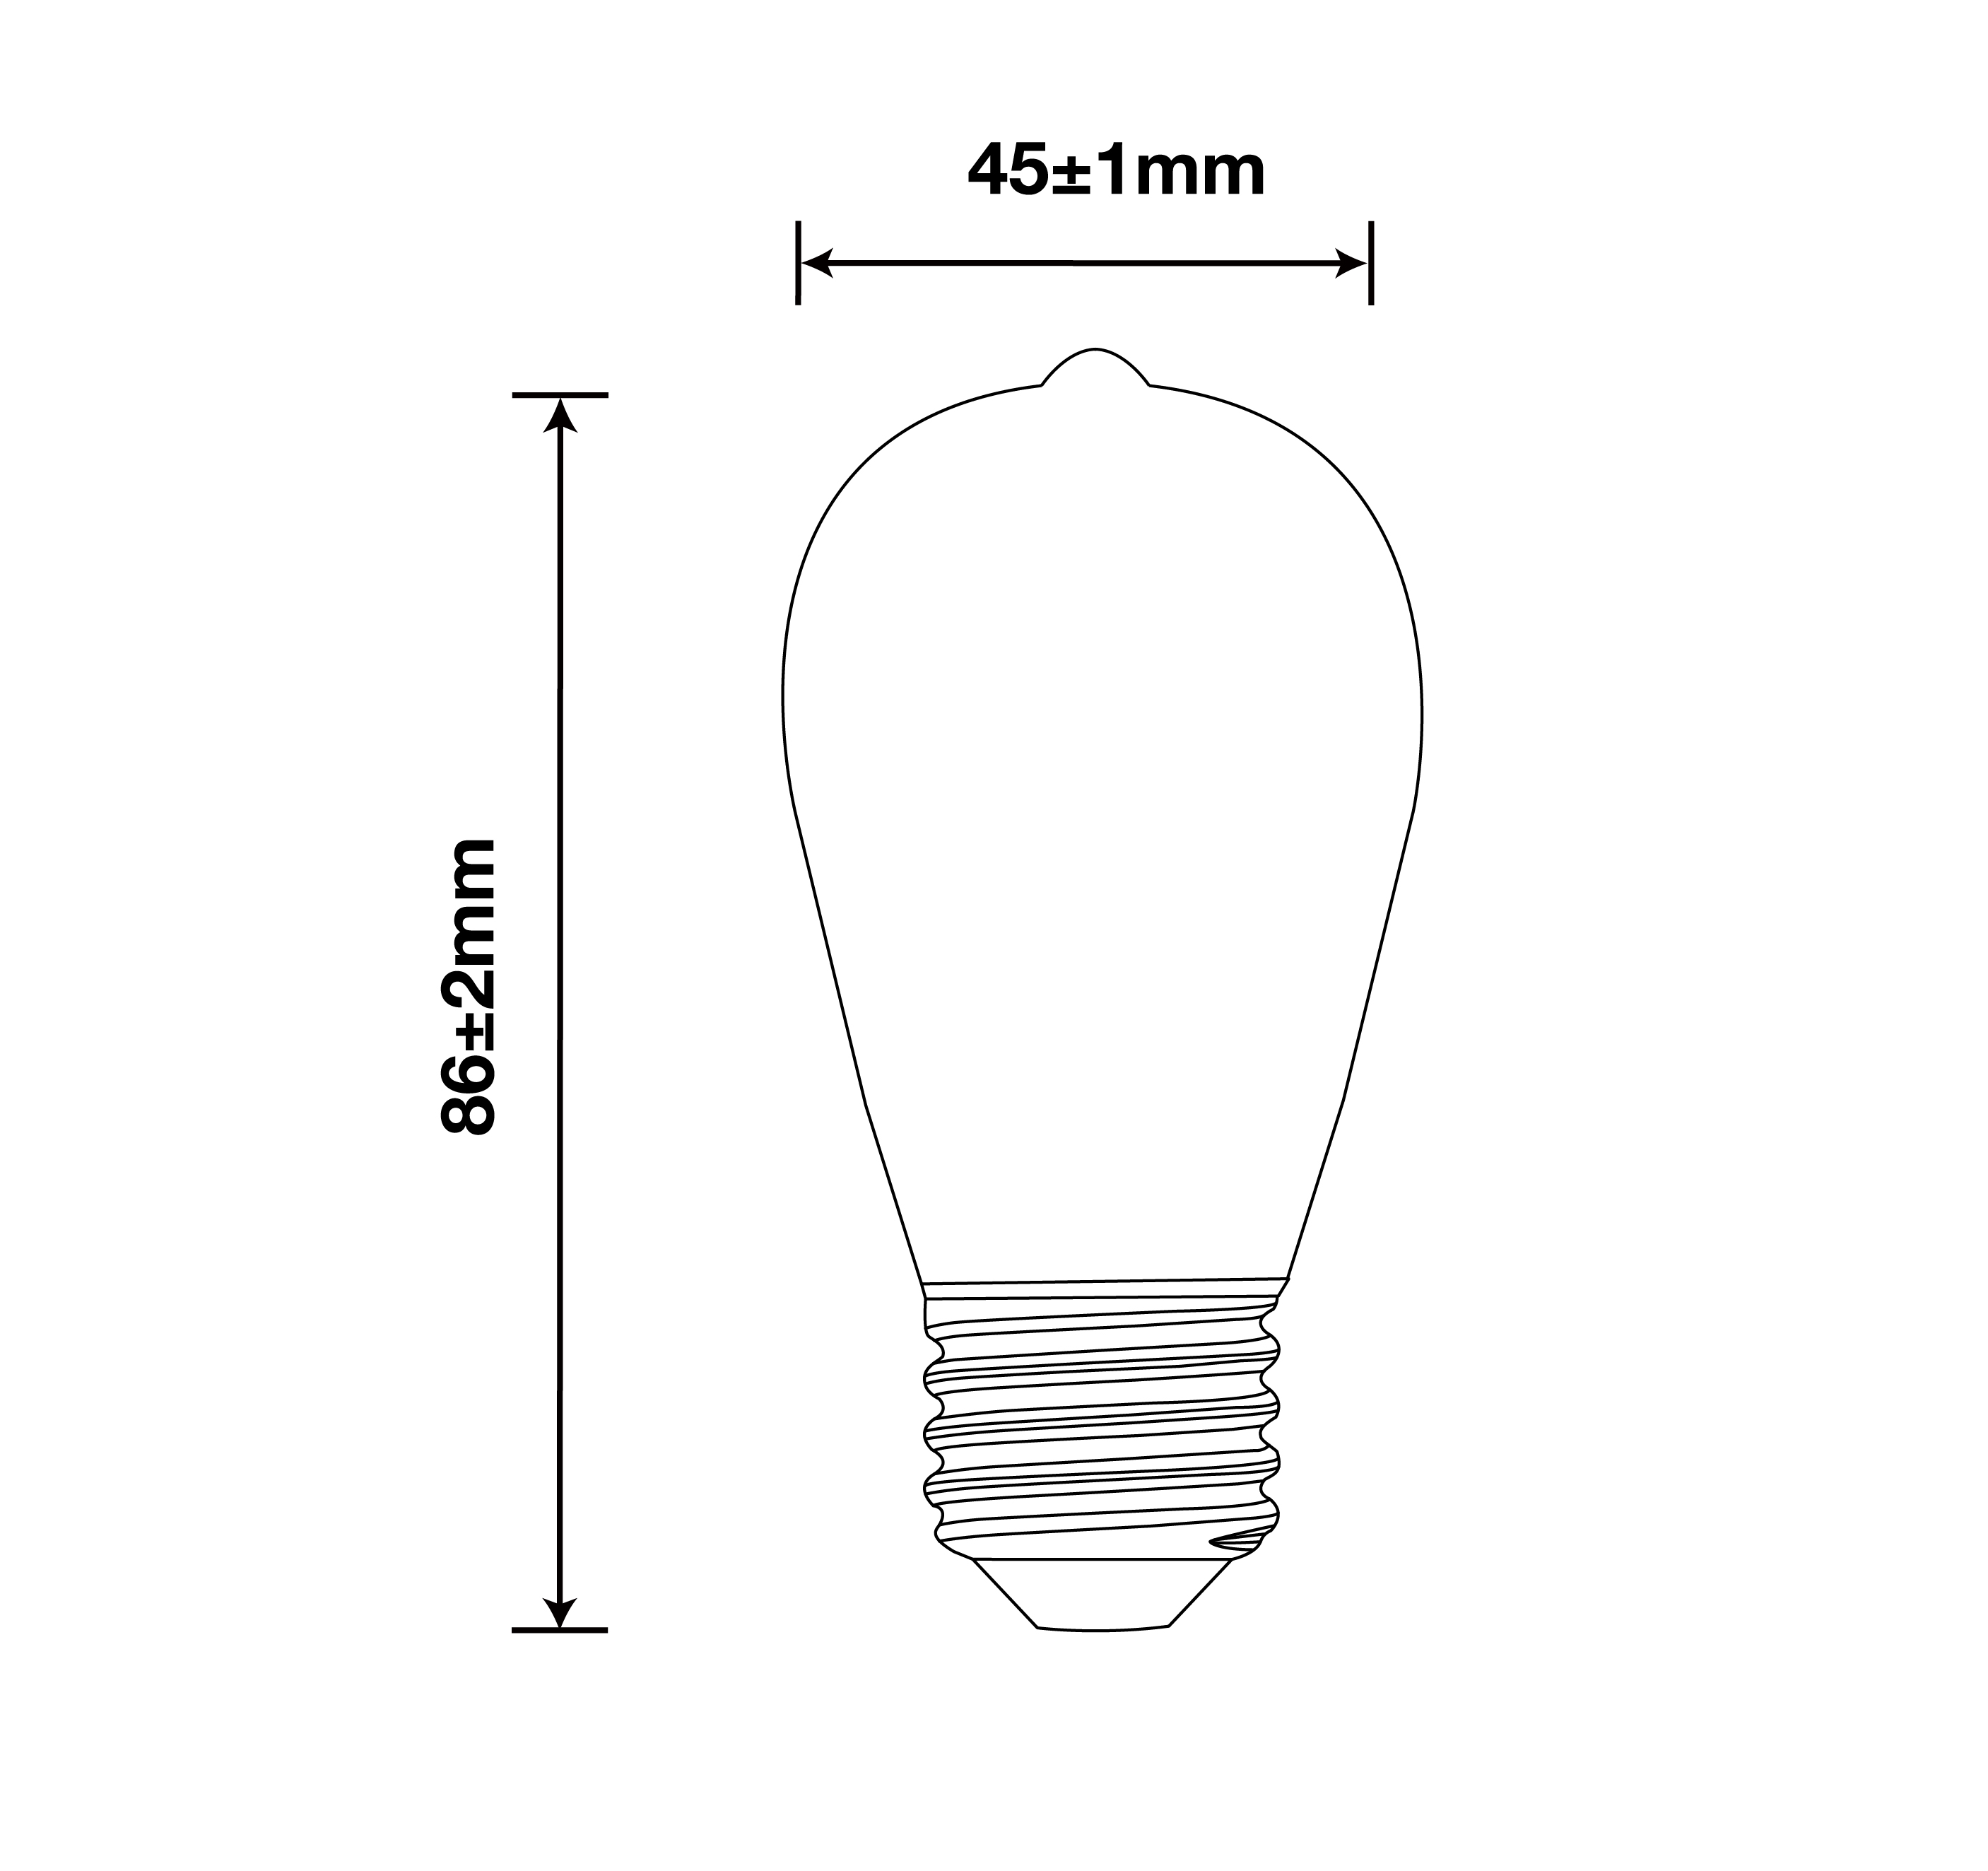 4W ST14 Filament Bulbs/40Watts Edison ST14 Bulbs